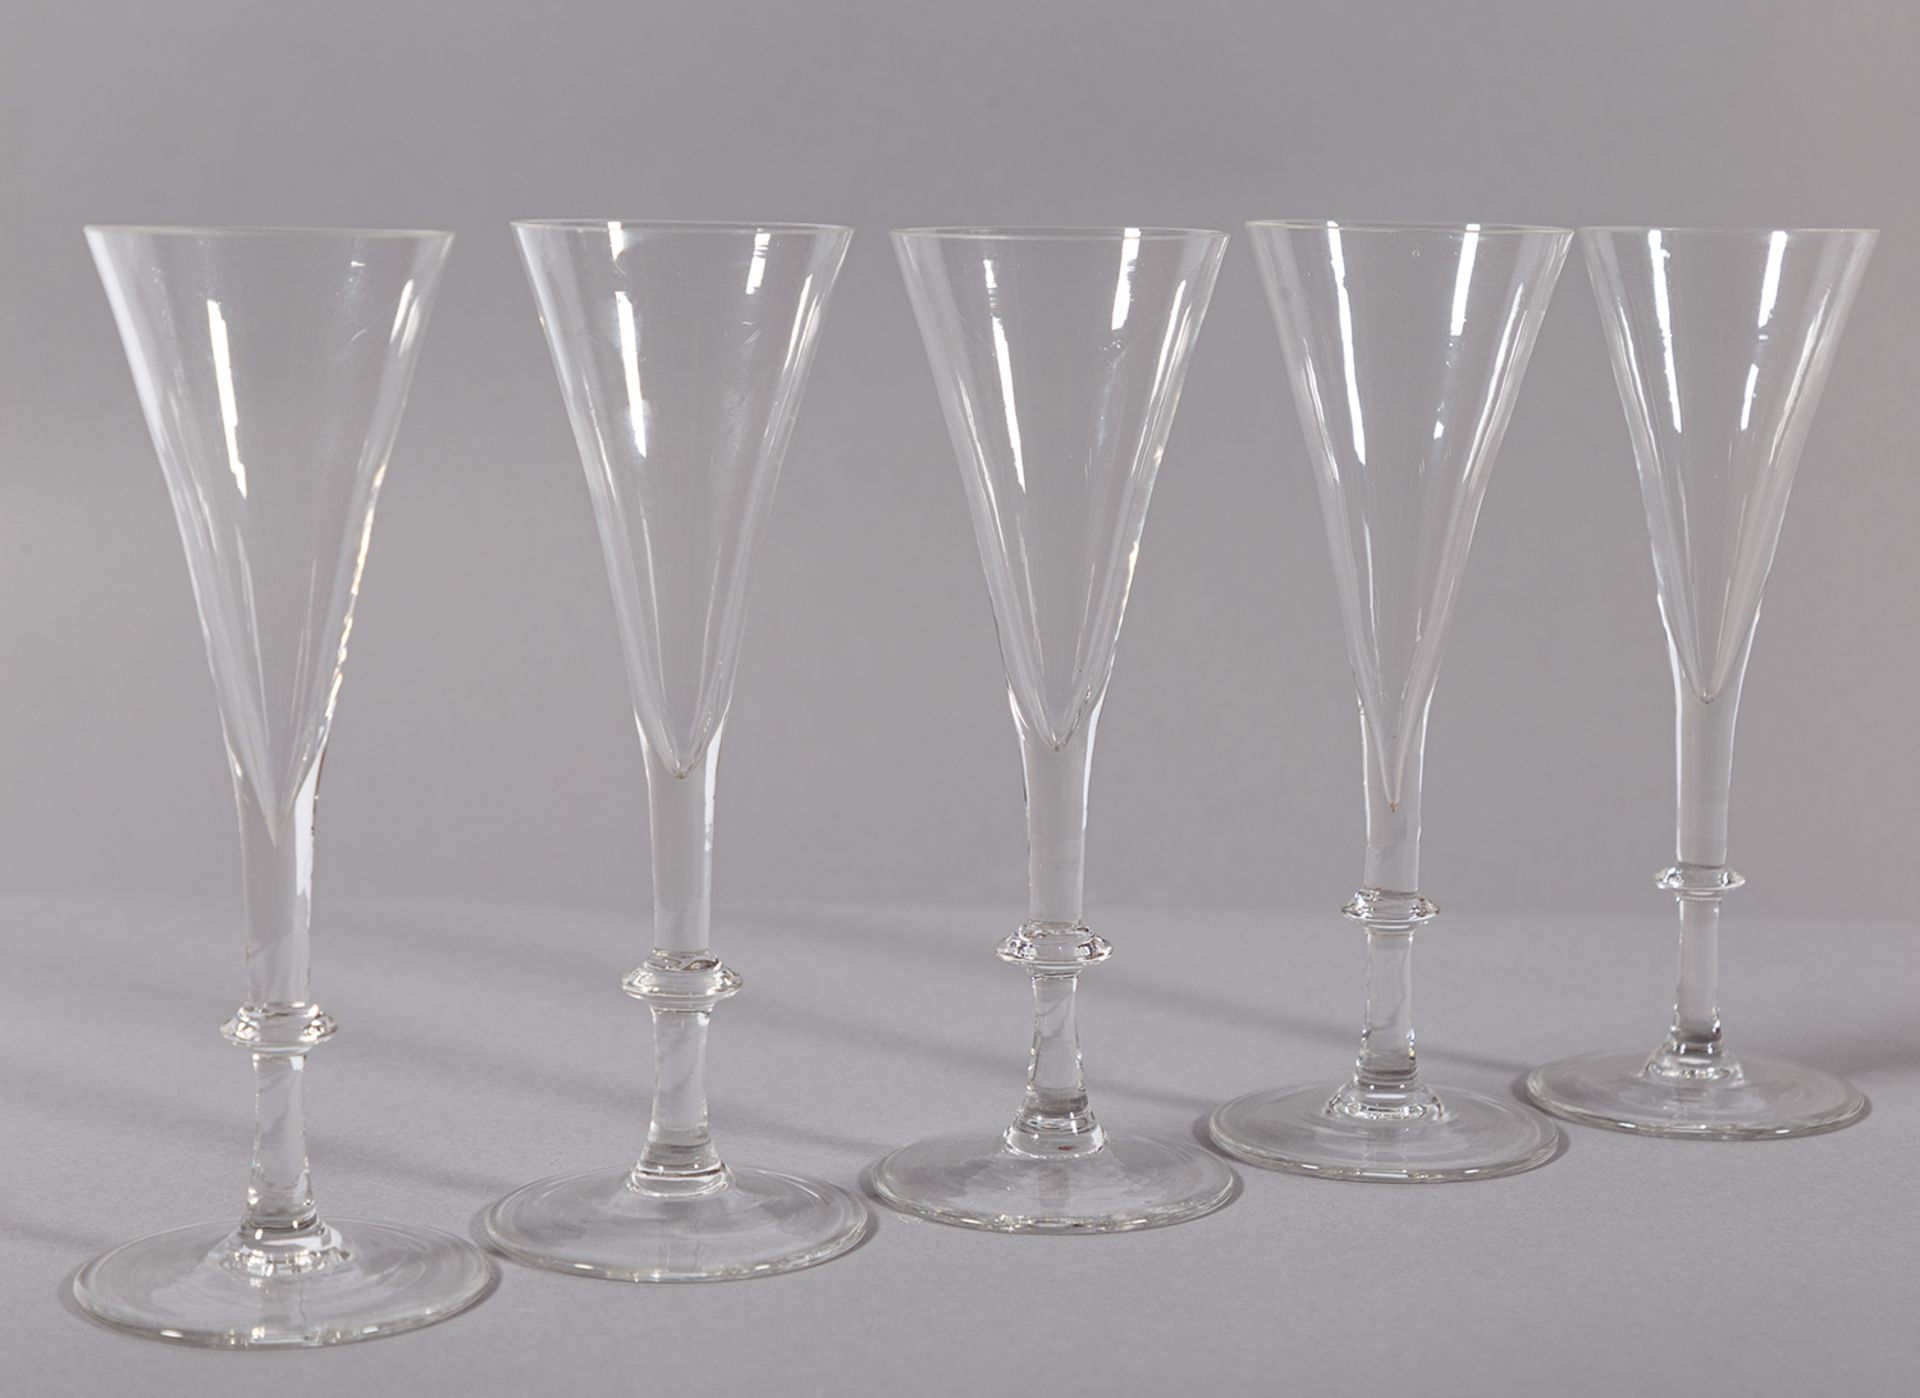 Acht kleine Champagnerflöten. Wohl Hessen, 18. Jh. H 16 cm. Aus dem Nachlass der Maria Ludwiga